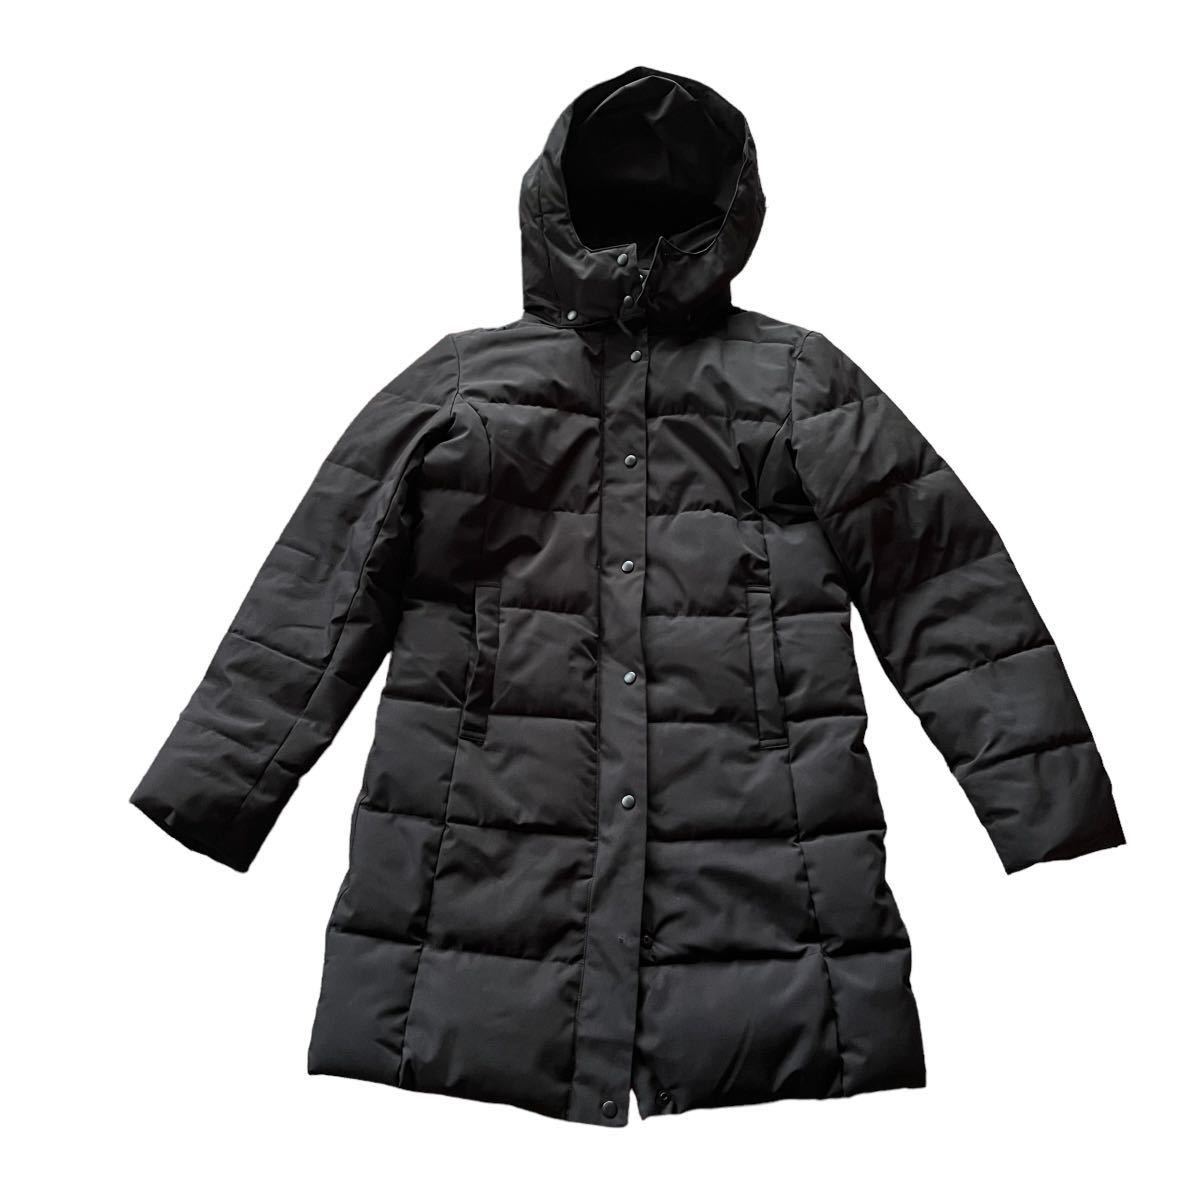 OUTDOOR PRODUCTS уличный Pro datsuk с хлопком жакет пальто чёрный женский M размер [AY1580]